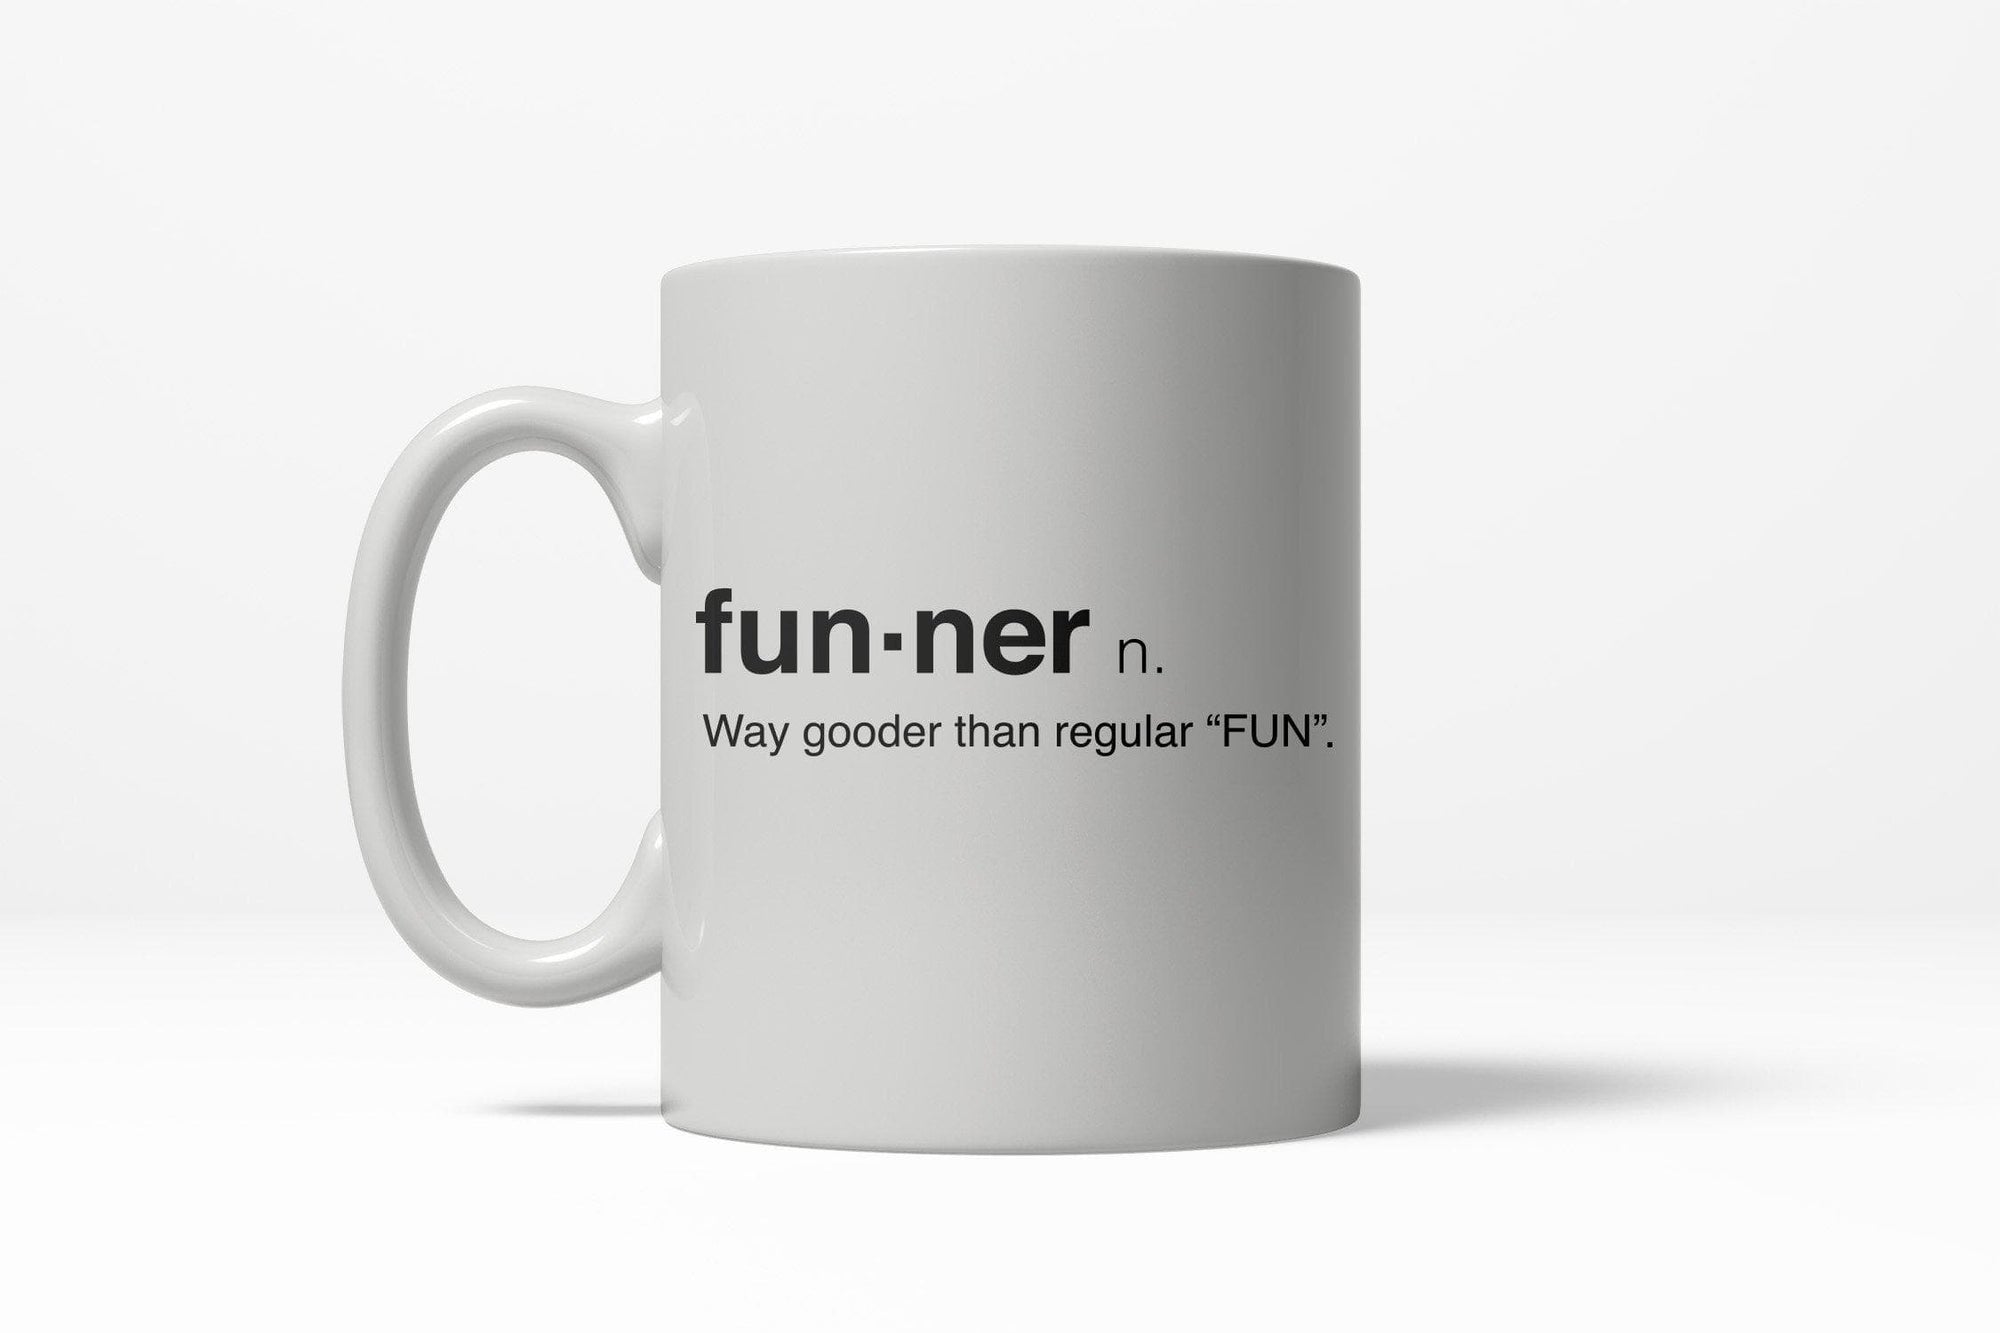 Funner Definition Mug - Crazy Dog T-Shirts